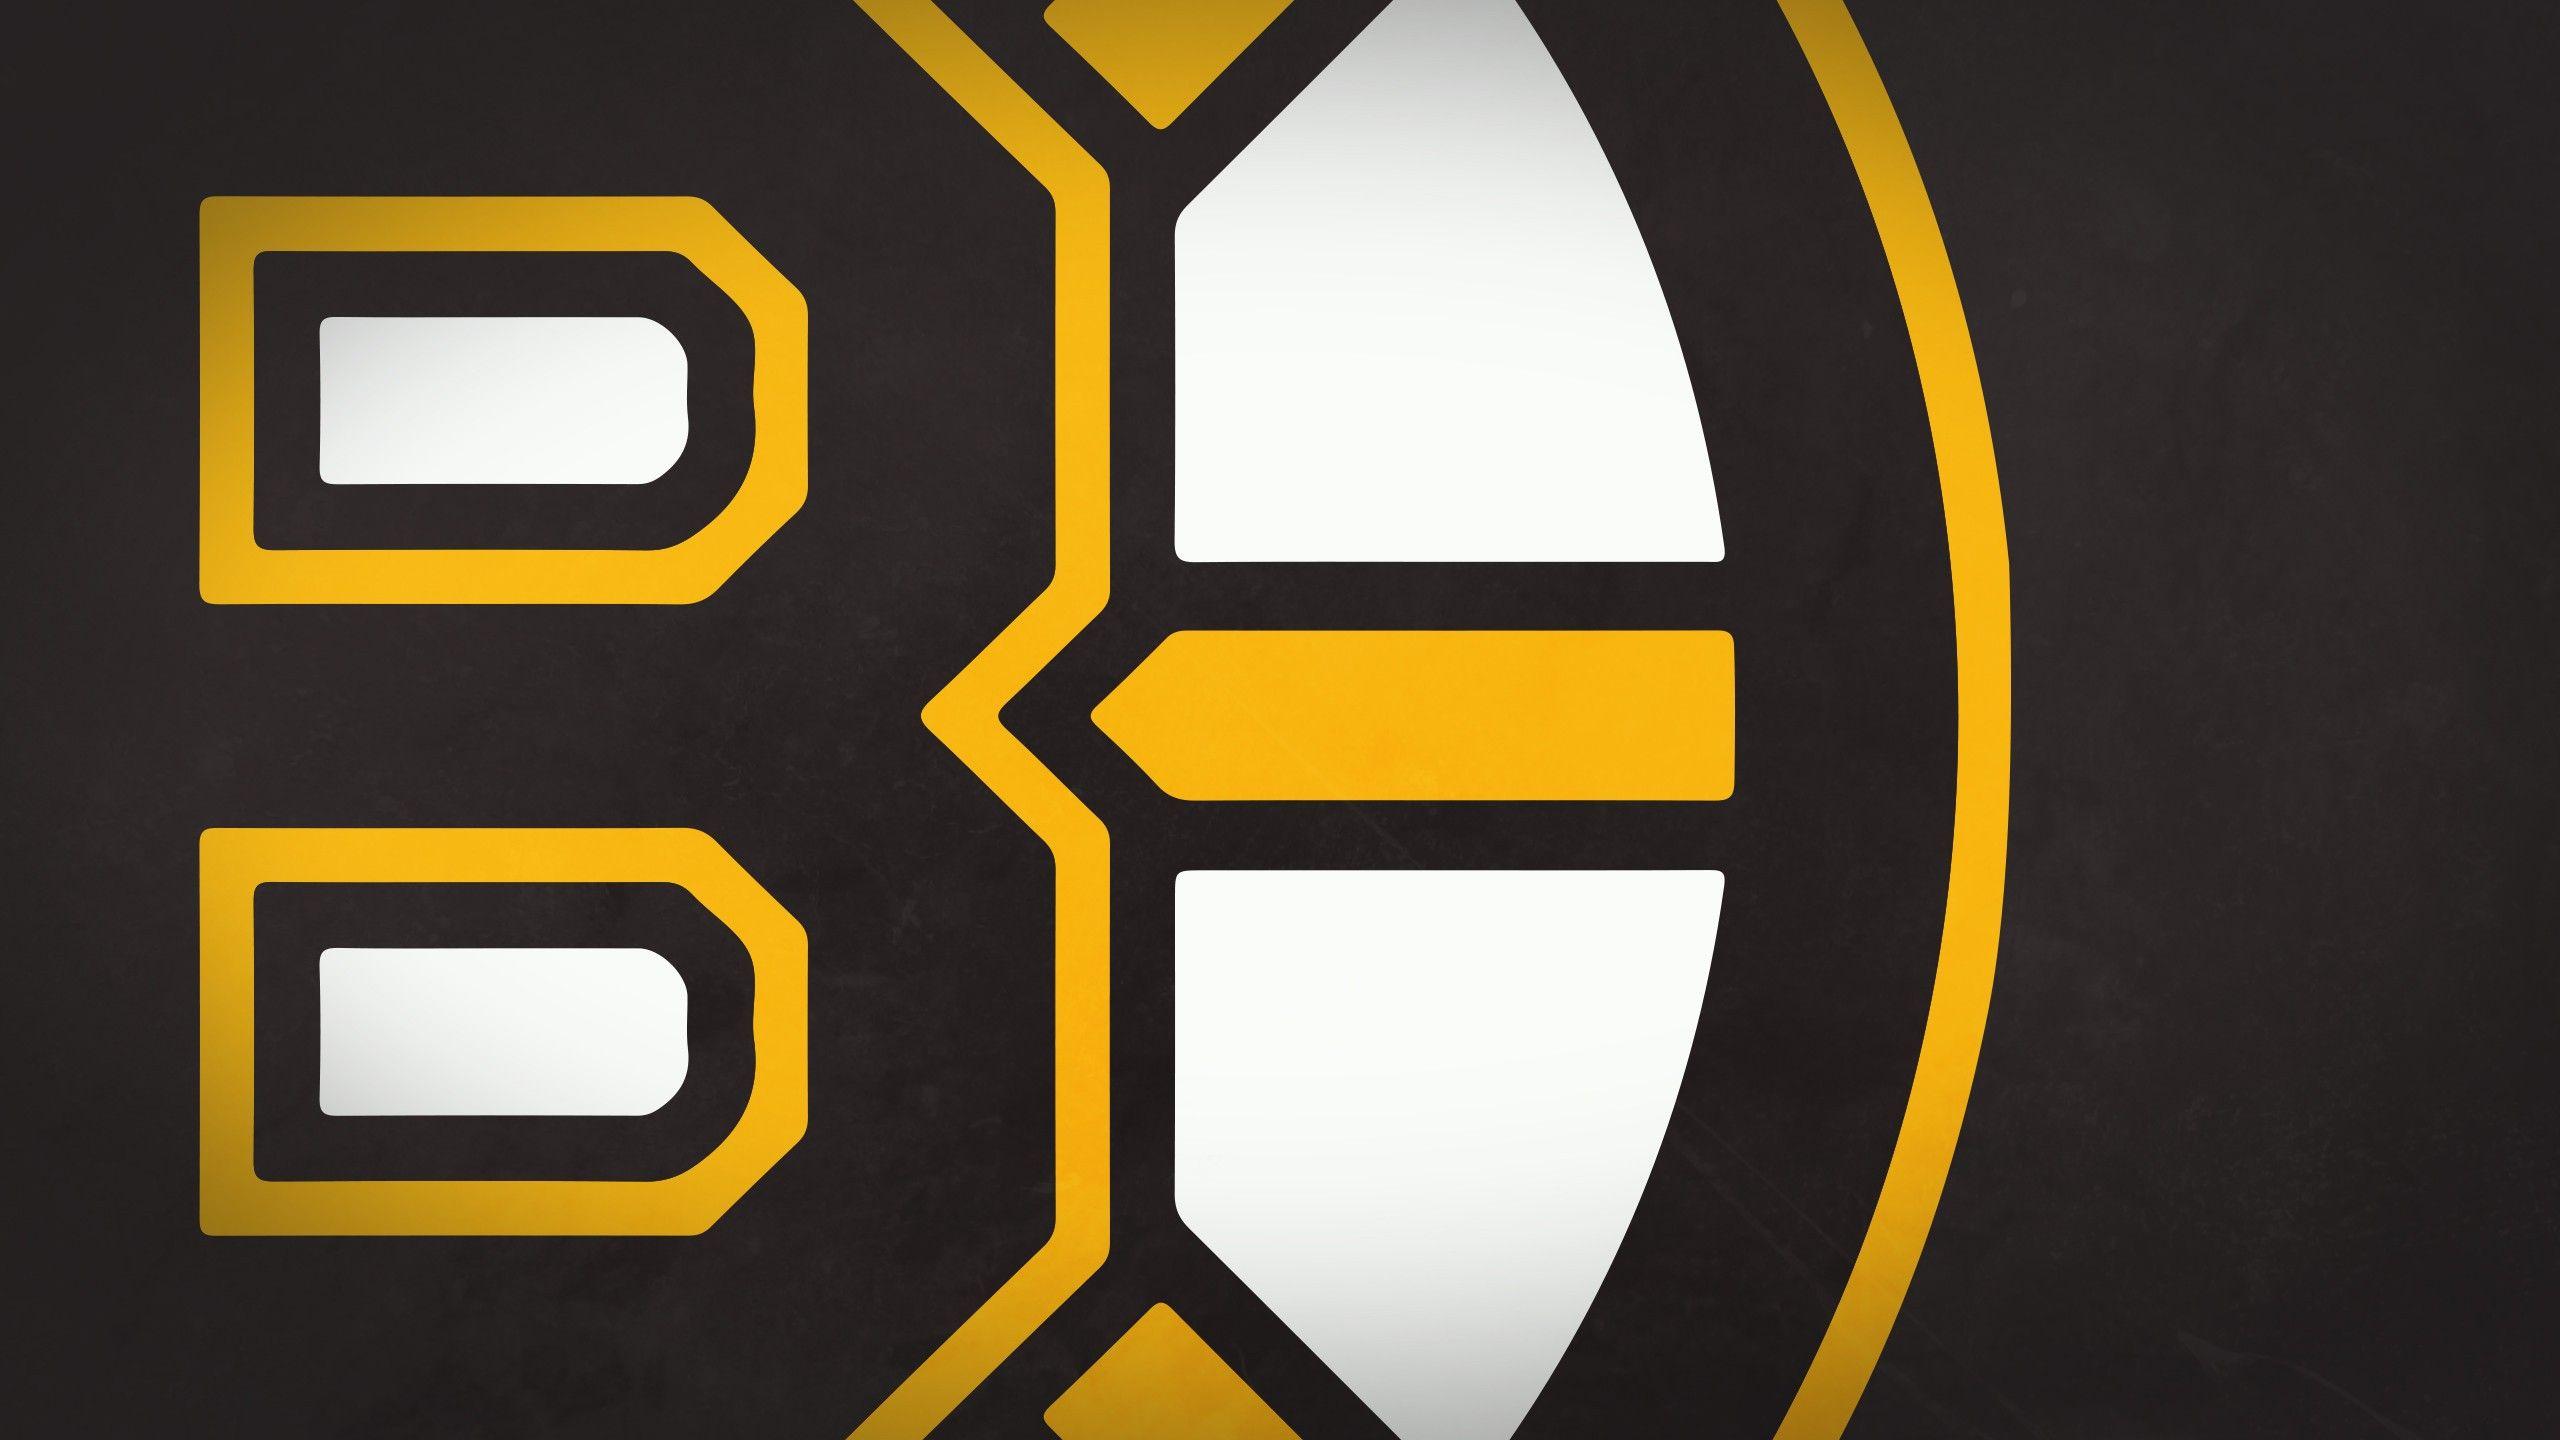 Boston Bruins Wallpaper. Boston Bruins Background